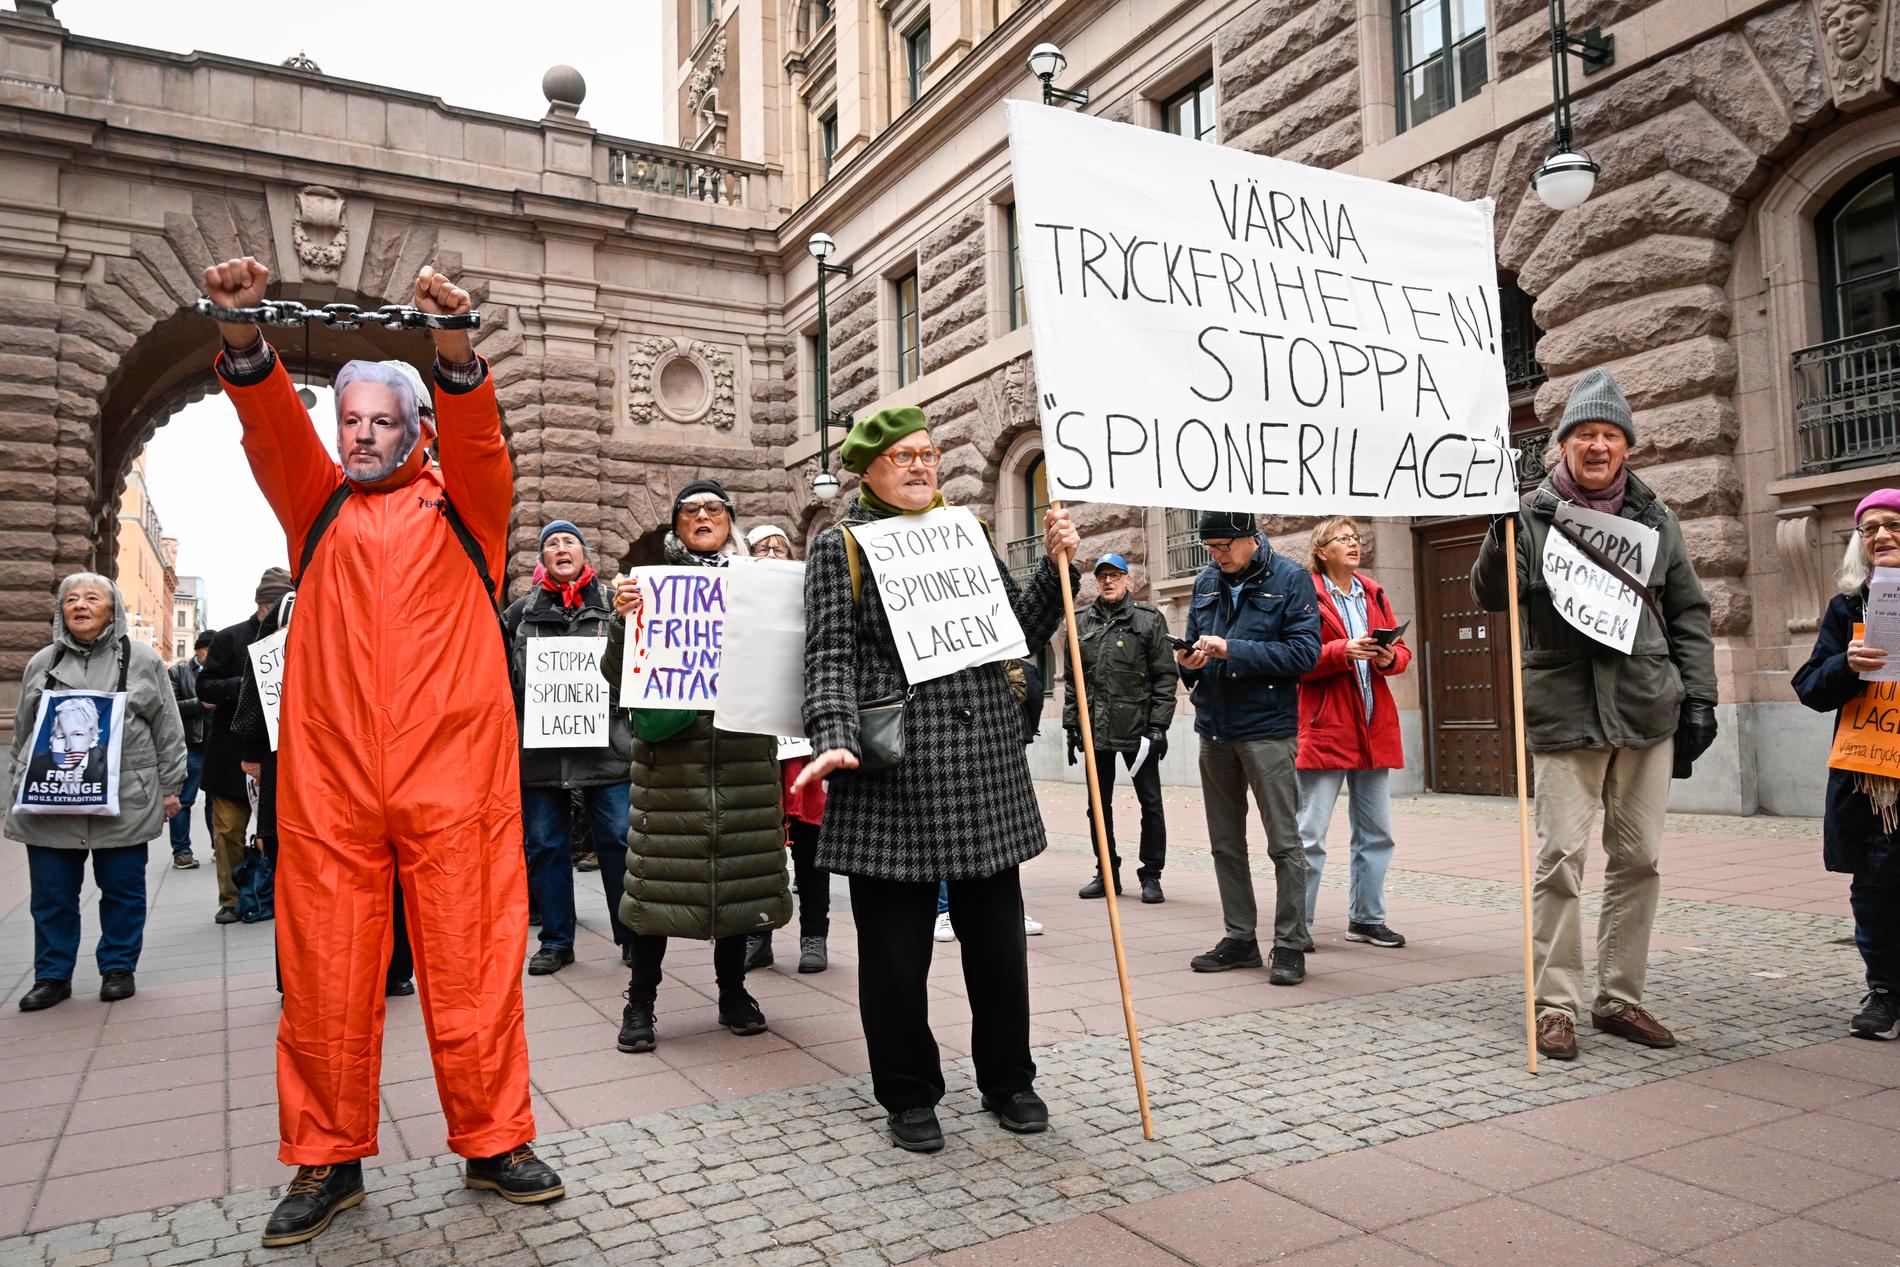 Utanför riksdagen demonstreras det i dag mot grundlagsändringen. En demonstrant har en mask föreställande Julian Assange. På plakaten står bland annat ”Värna tryckfriheten – stoppa spionerilagen”.